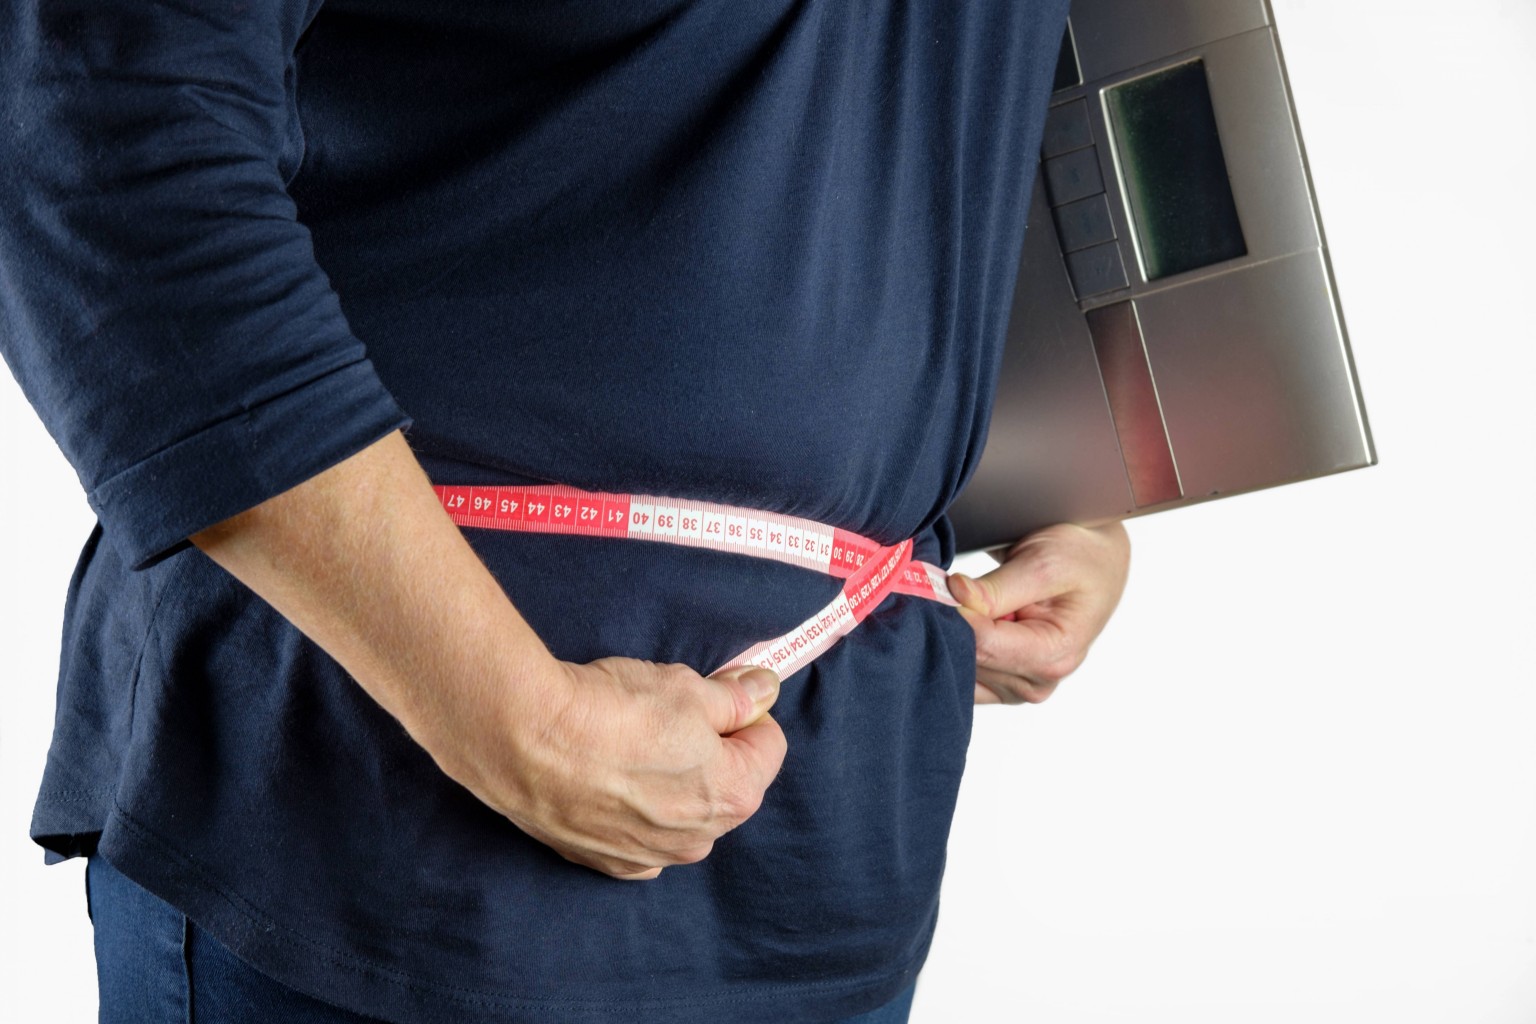 Mitos y realidades sobre  la cirugía bariátrica para perder peso